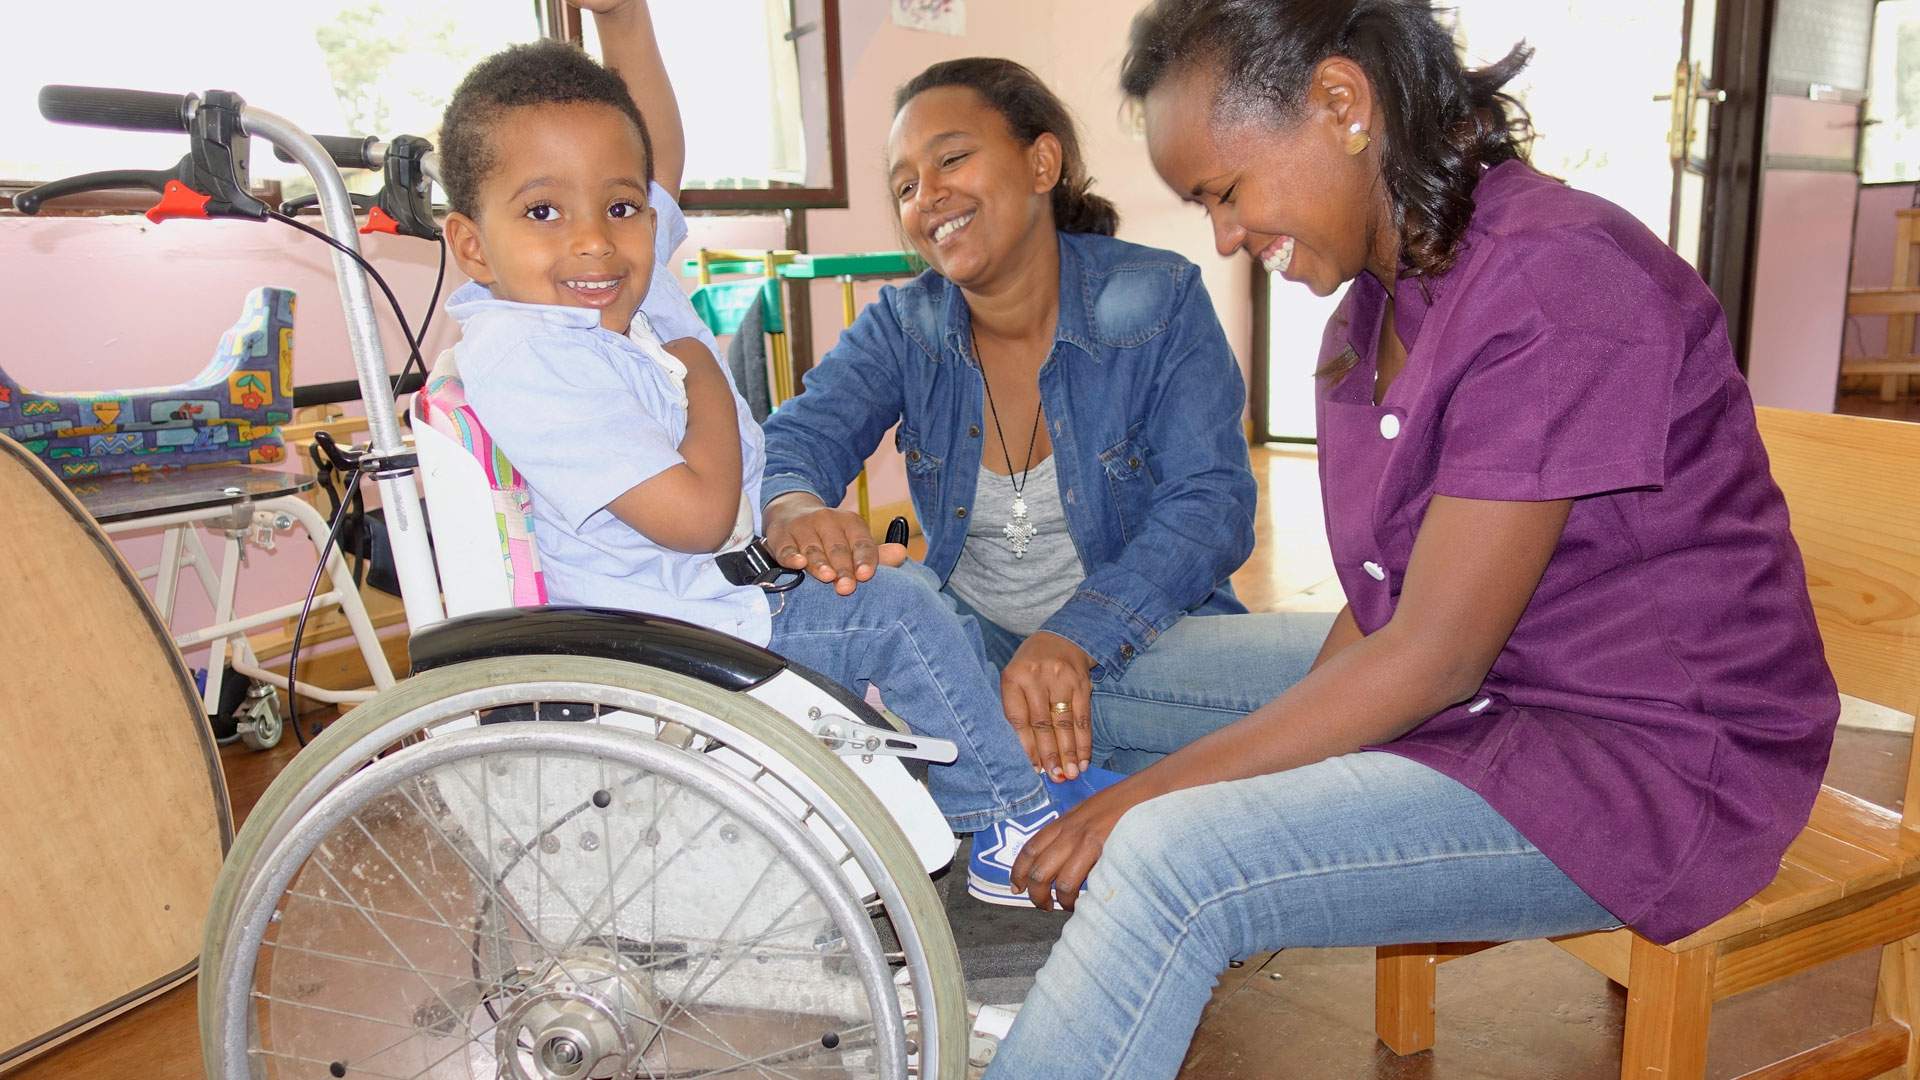  gemeinnuetzige stiftungen verhelfen menschen mit handicap zu mehr mobilitaet